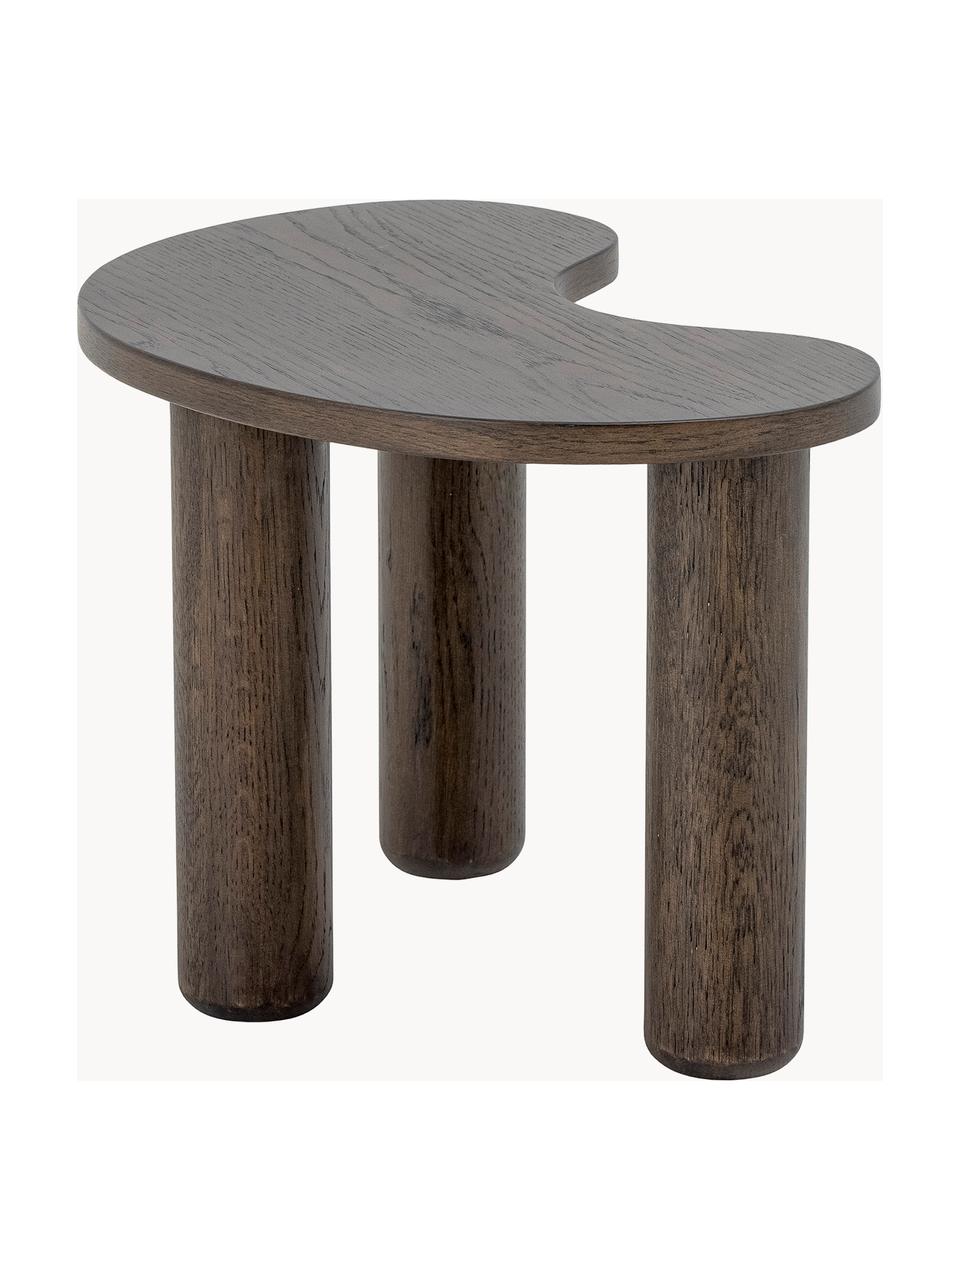 Tavolino da salotto in legno di albero della gomma dalla forma organica Luppa, Albero della gomma, Legno di albero della gomma, Larg. 53 x Prof. 36 cm